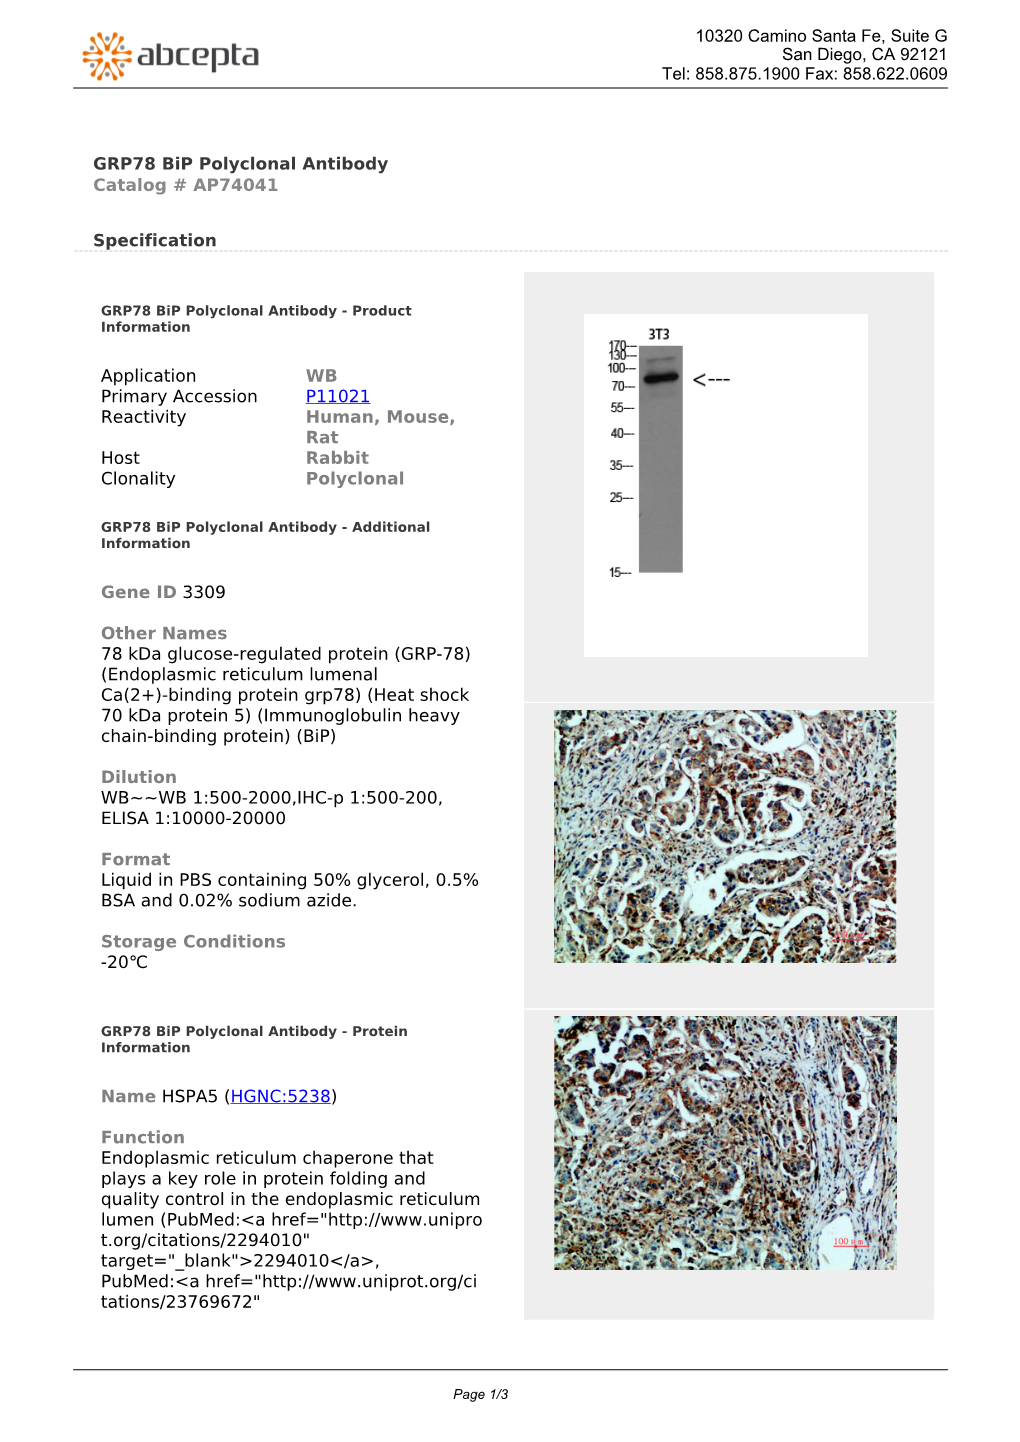 GRP78 Bip Polyclonal Antibody Catalog # AP74041